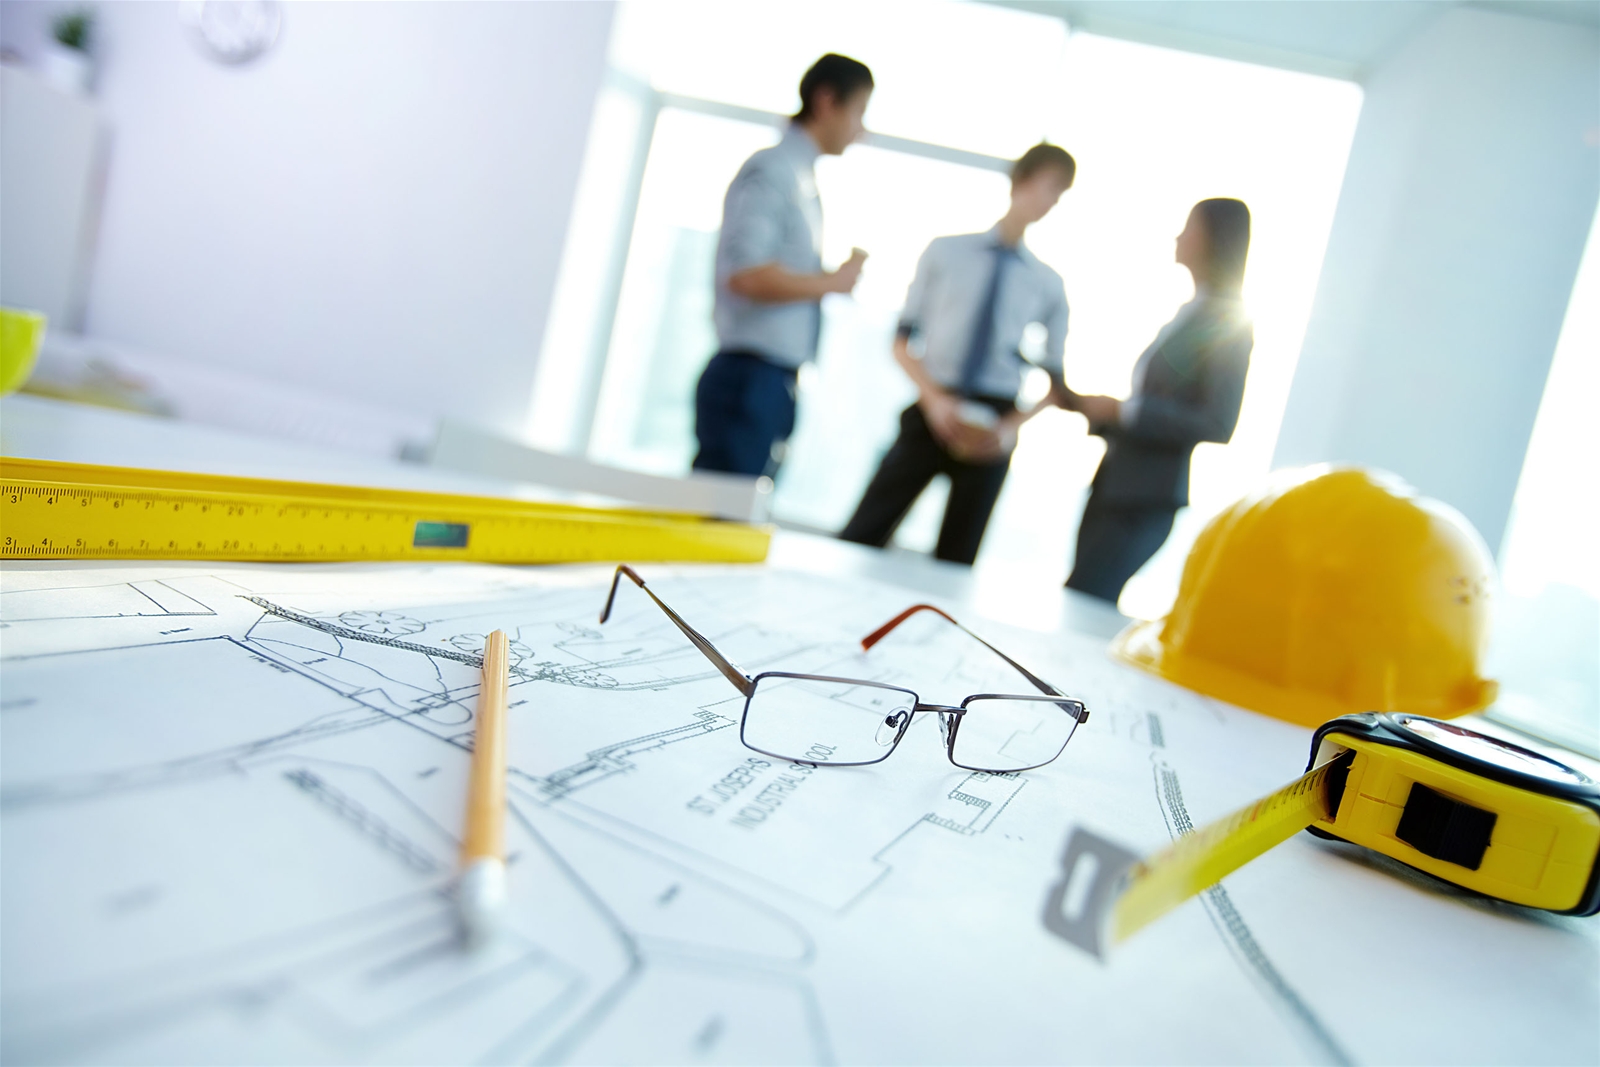 Việc cấp giấy phép xây dựng cho toàn bộ công trình thuộc dự án hoặc cấp giấy phép cho từng công trình riêng lẻ là theo đề nghị của chủ đầu tư có công trình phải xin giấy phép xây dựng